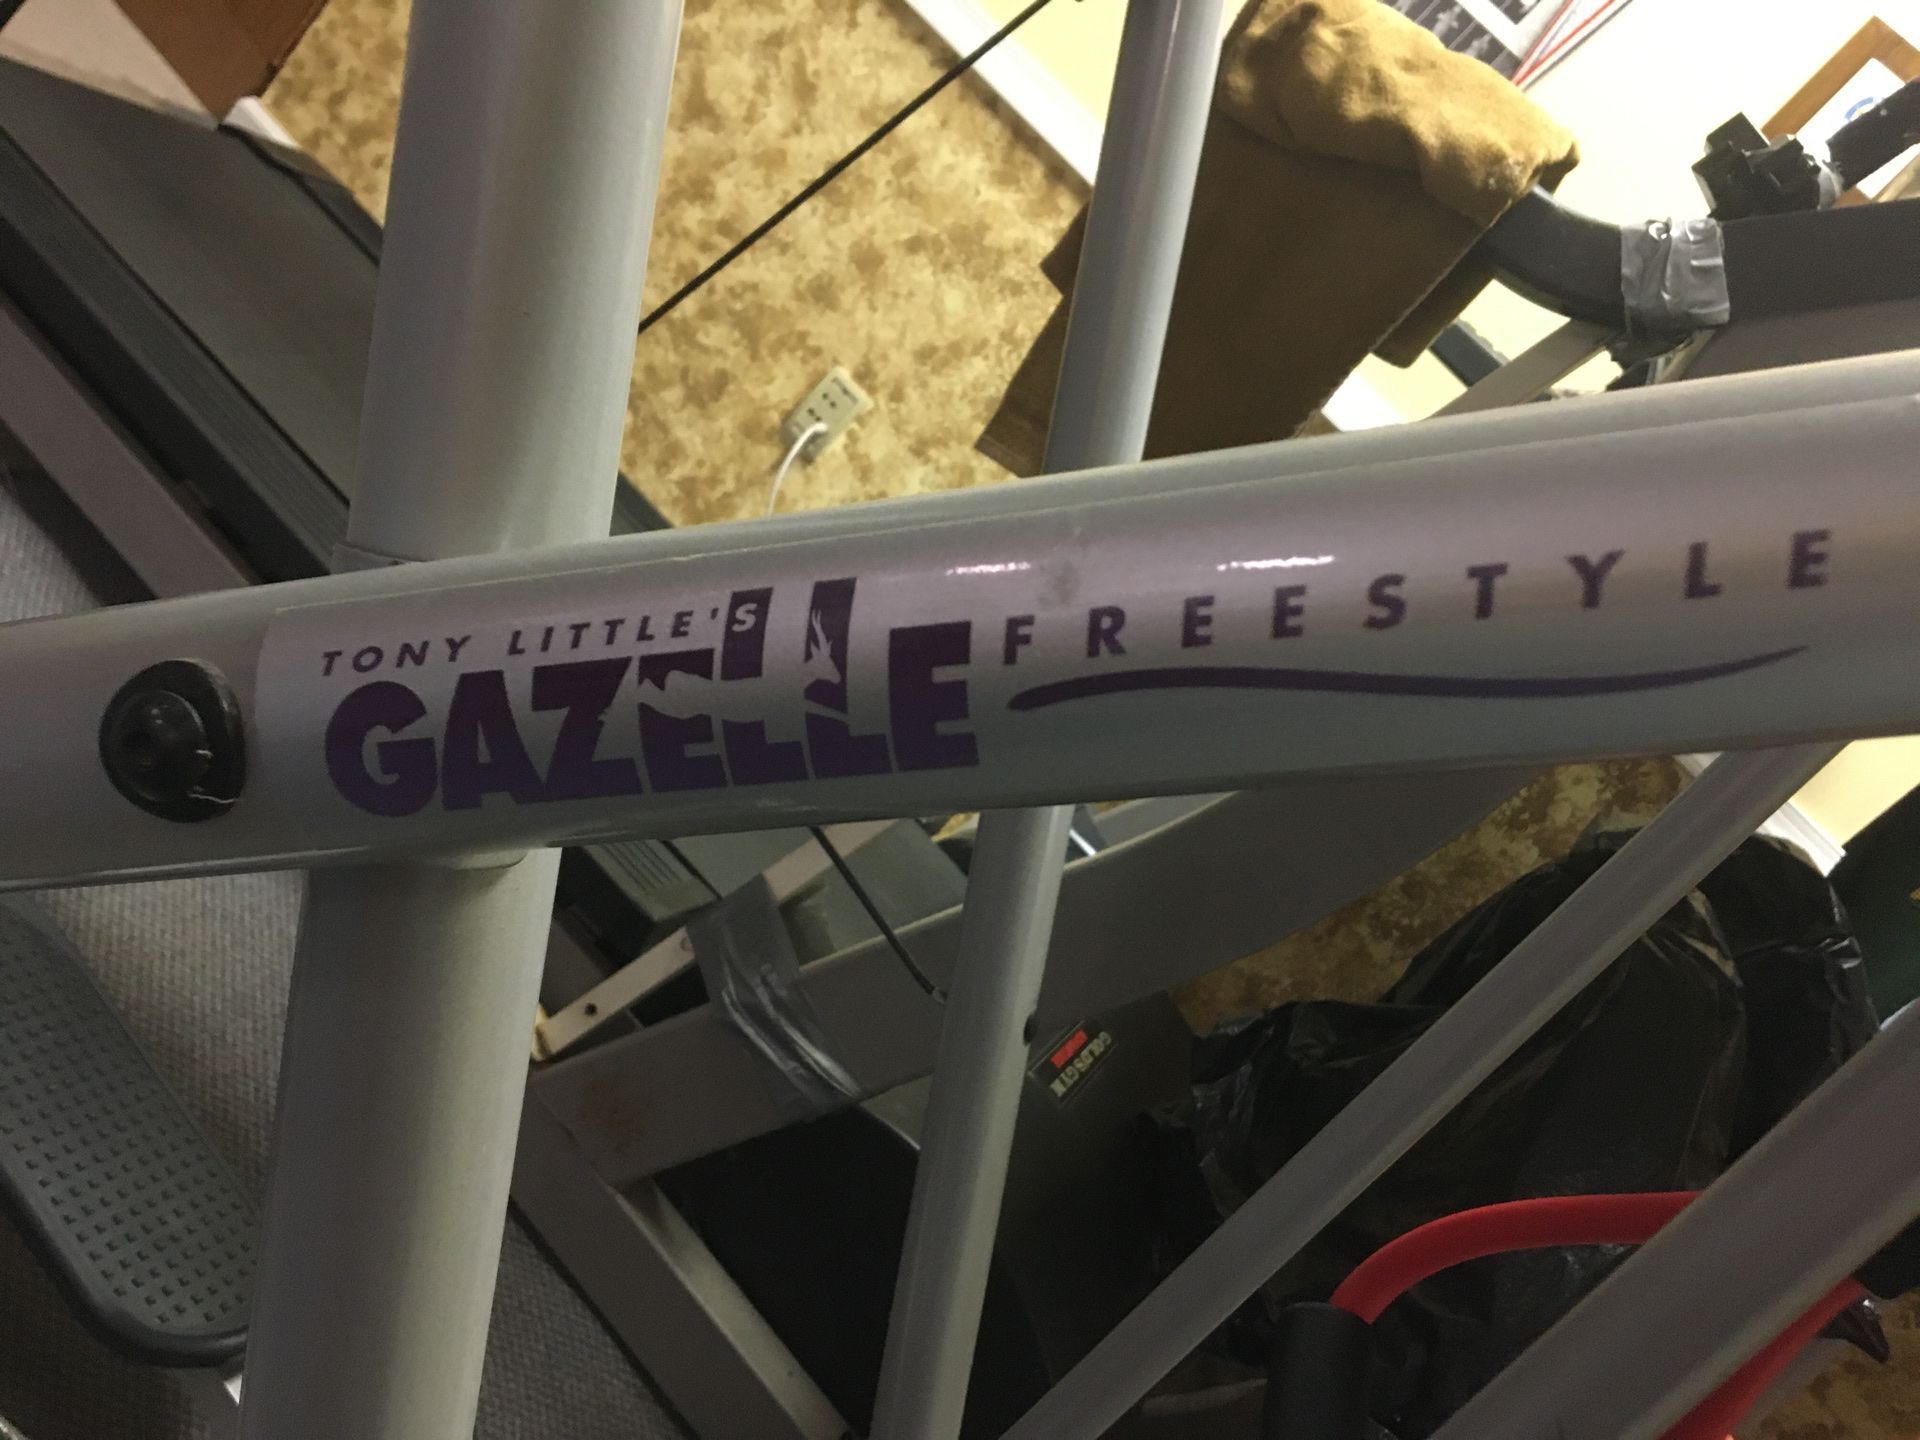 Tony Little Gazelle freestyle exercise machine